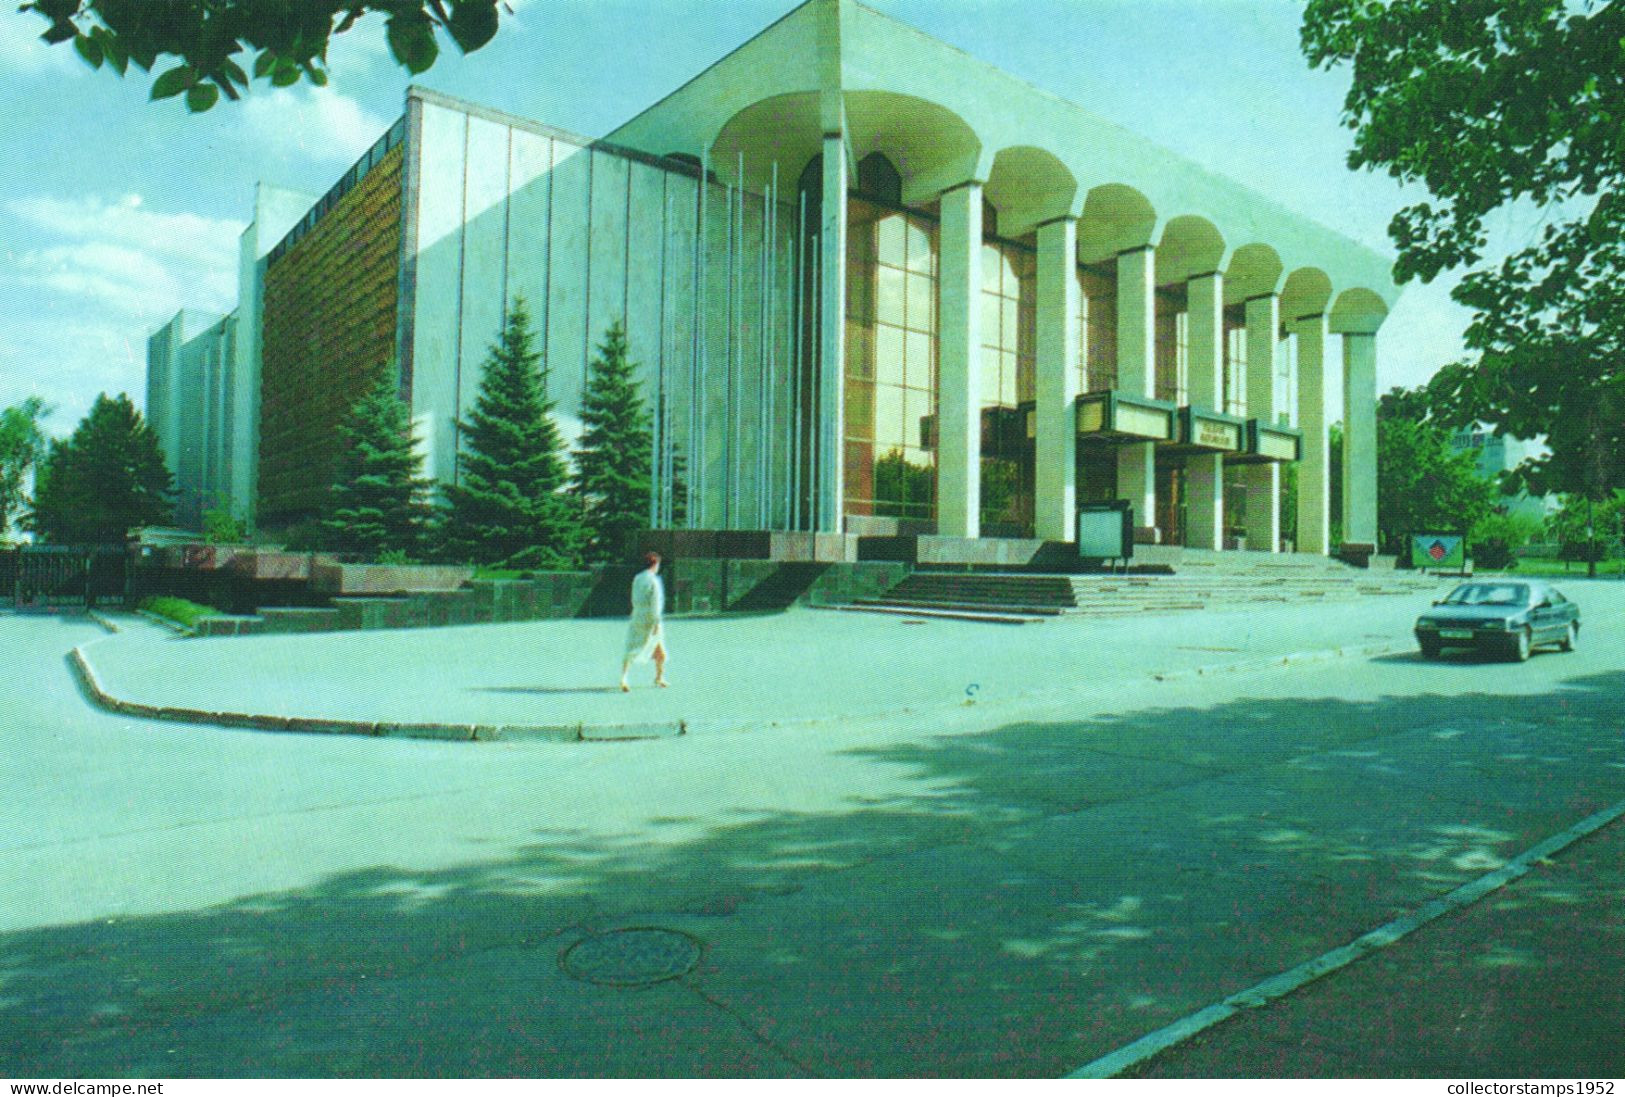 CHISINAU, PALATUL REPUBLICII, ARCHITECTURE, CAR, MOLDOVA - Moldavia